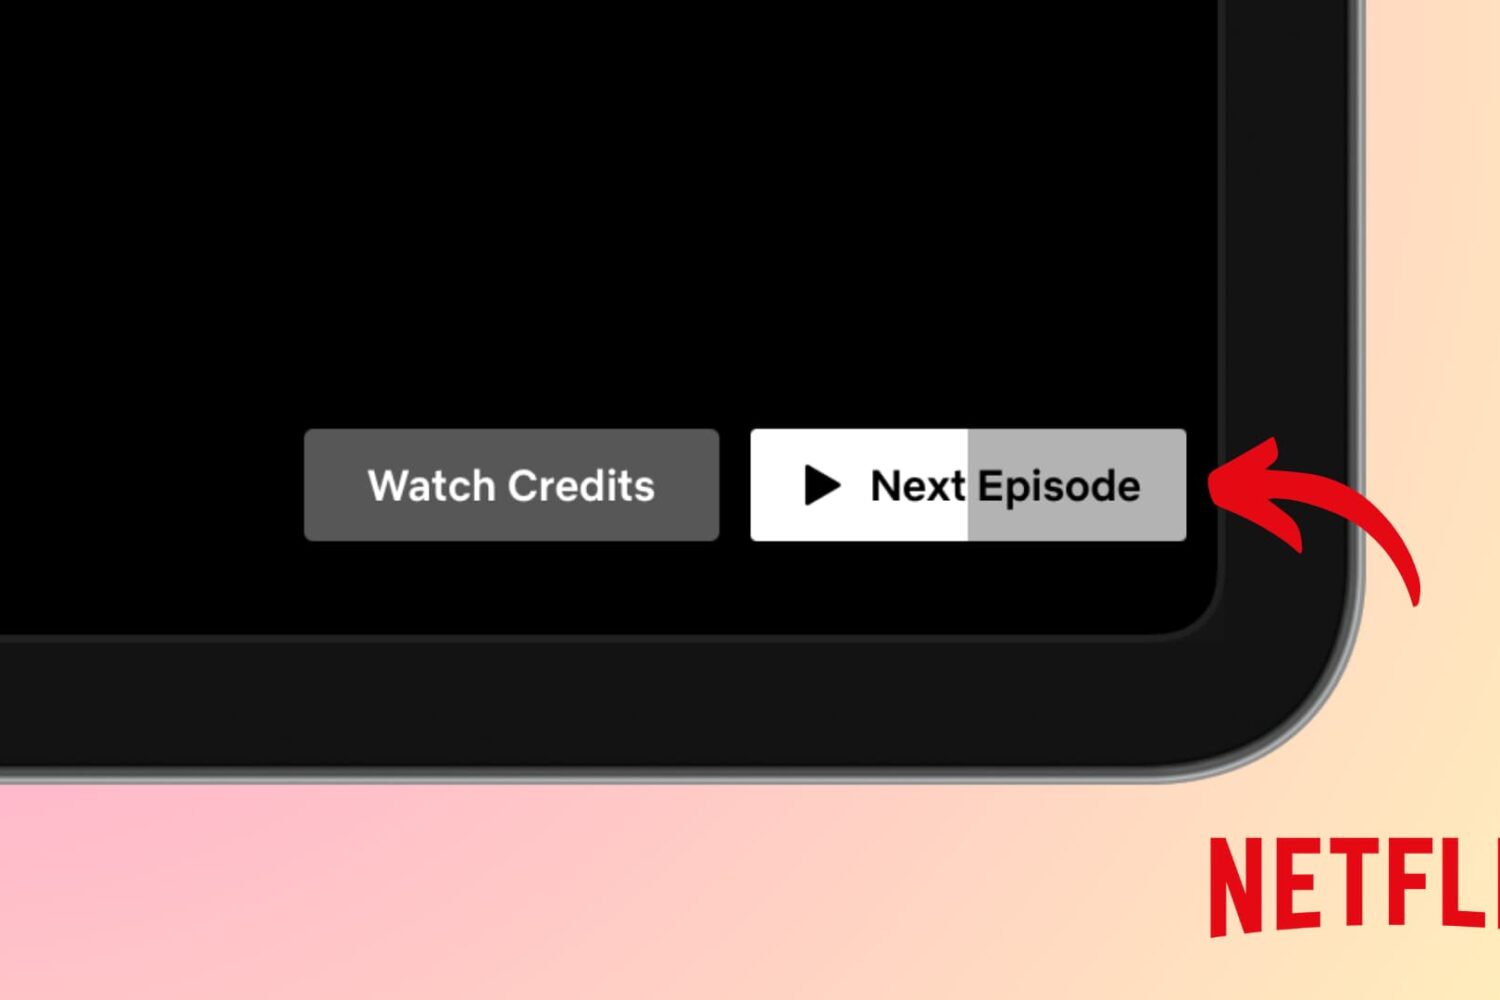 Next Episode button working on Netflix